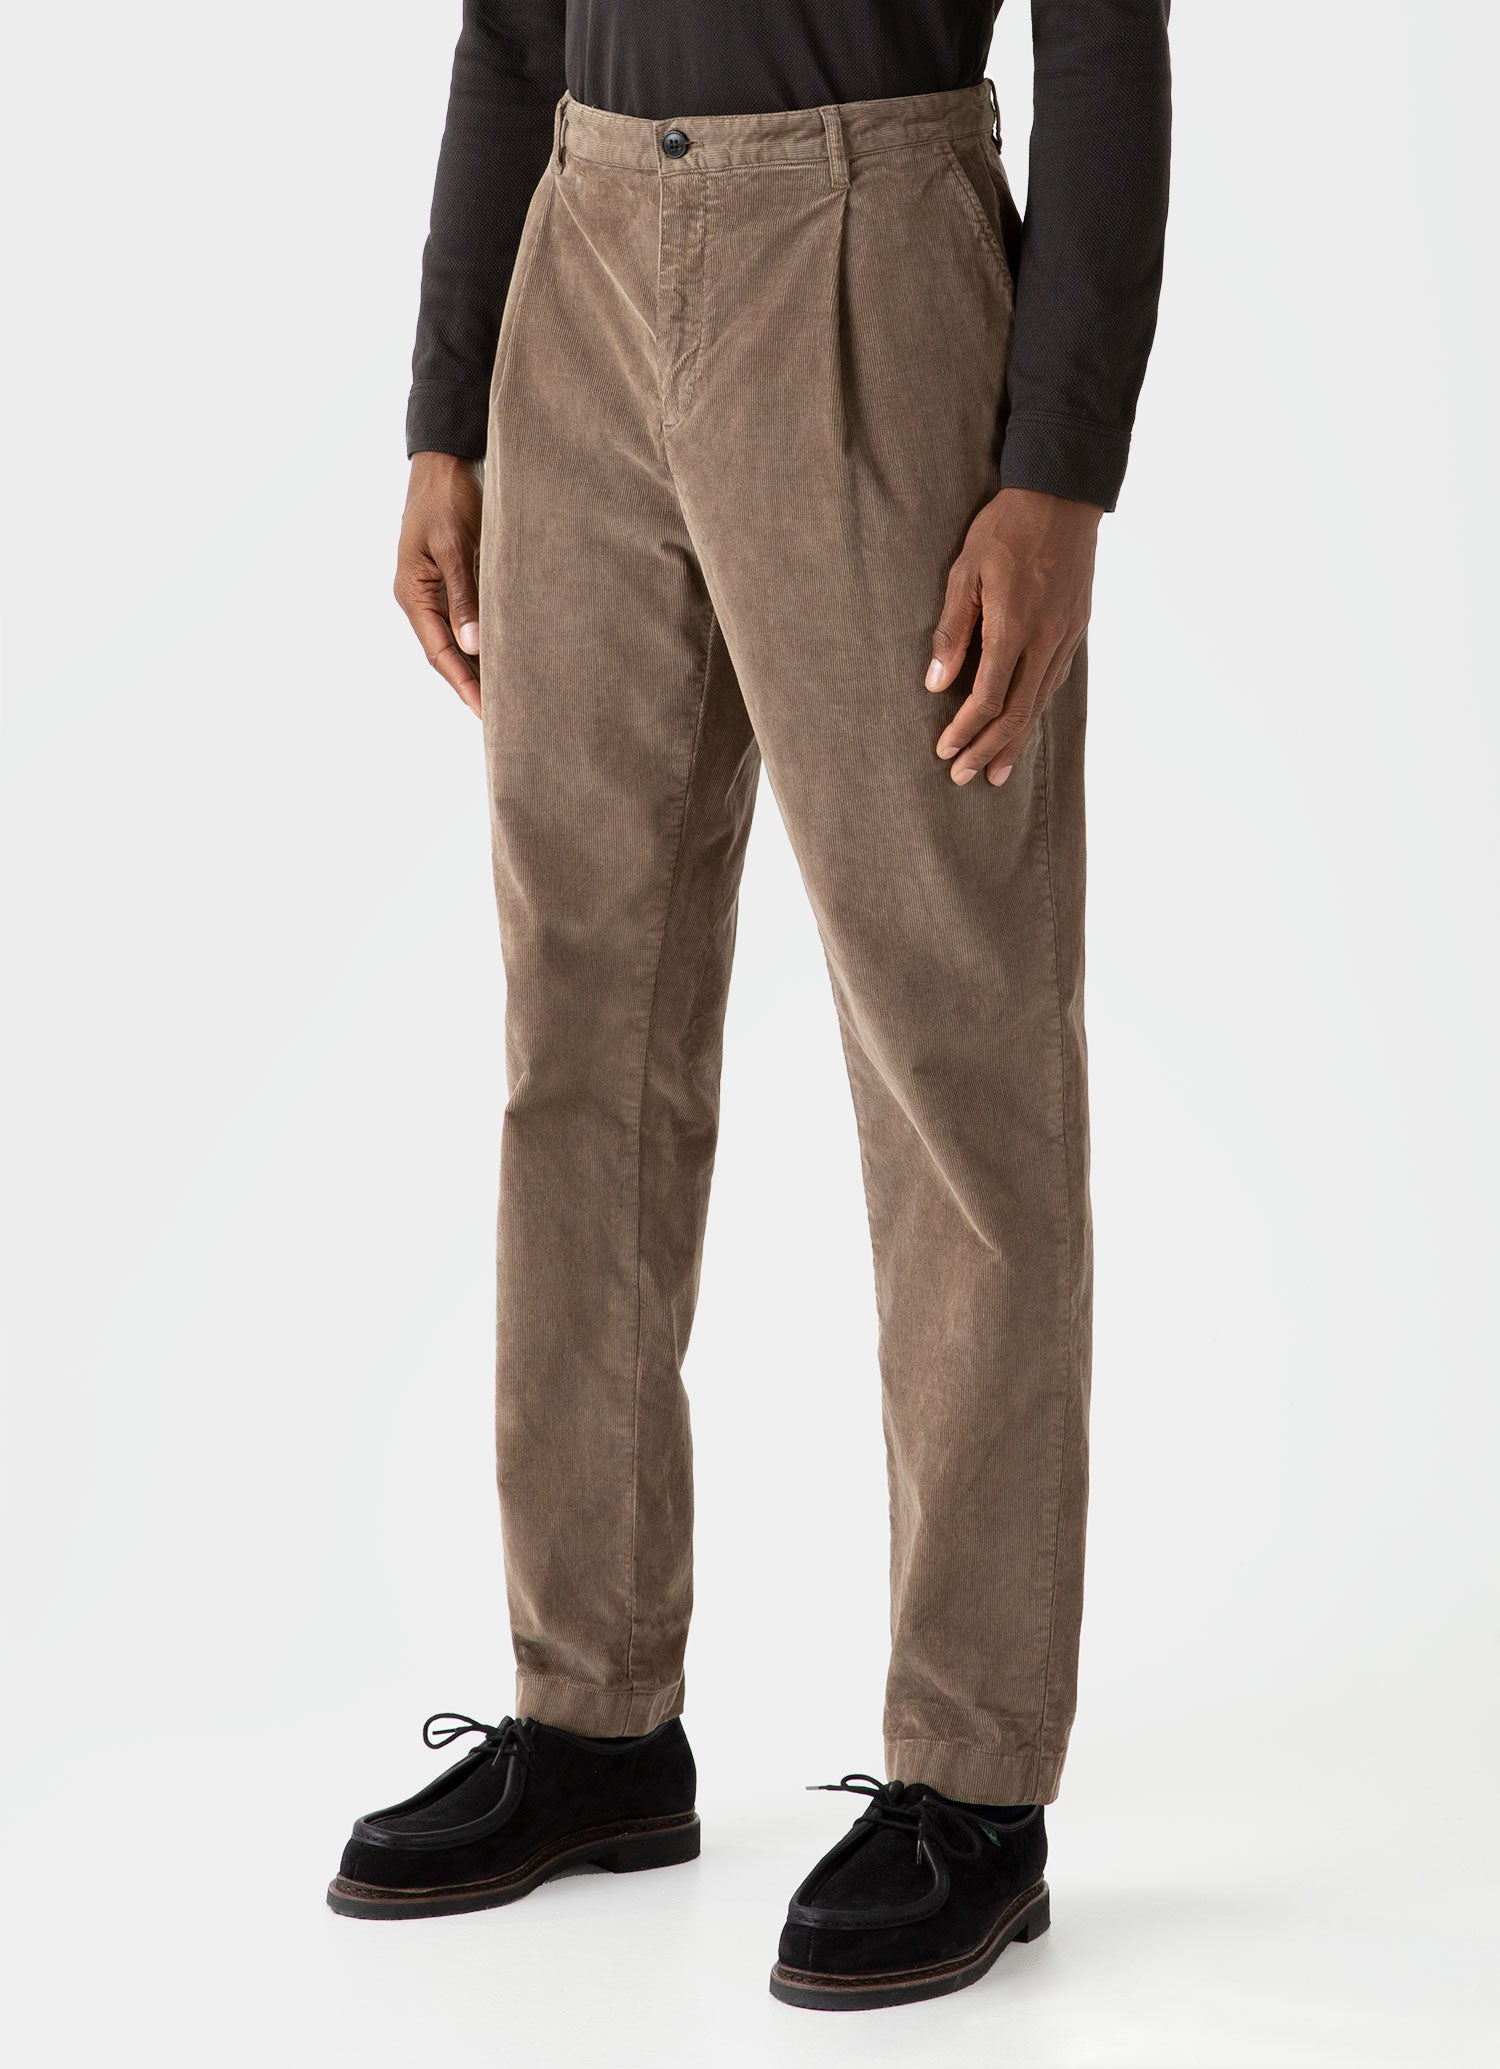 Men's Pleated Corduroy Trouser in Dark Stone | Sunspel